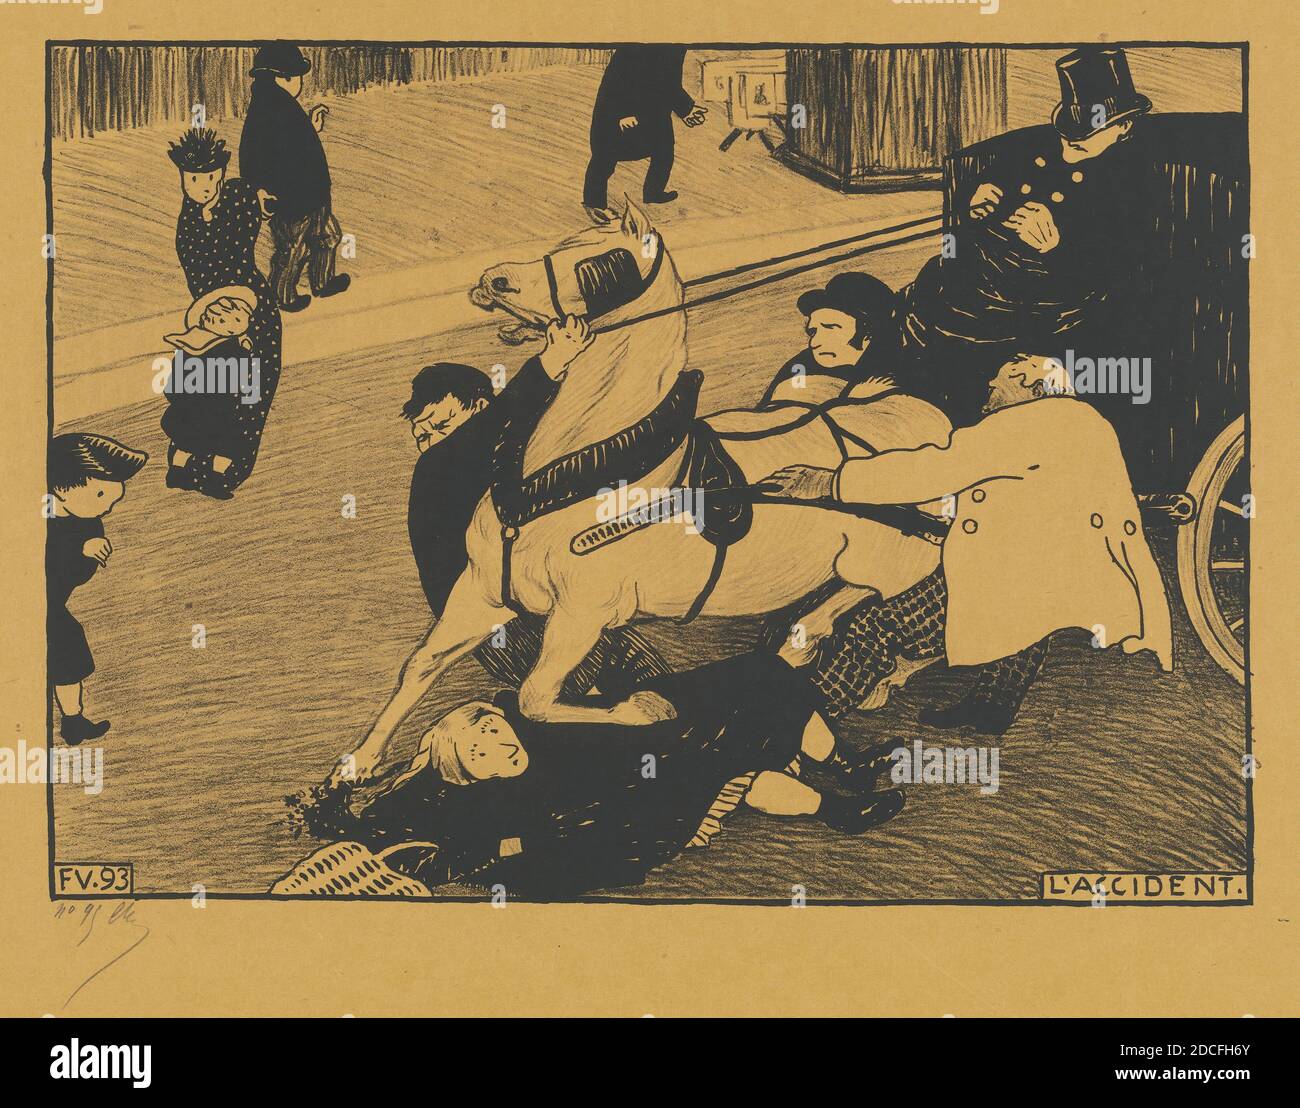 Félix Vallotton, (artiste), Suisse, 1865 - 1925, l'accident (l'accident), Paris intense, (série), 1893, lithographie (zinc) sur papier vélin jaune, total: 22.2 x 31.2 cm (8 3/4 x 12 5/16 po Banque D'Images